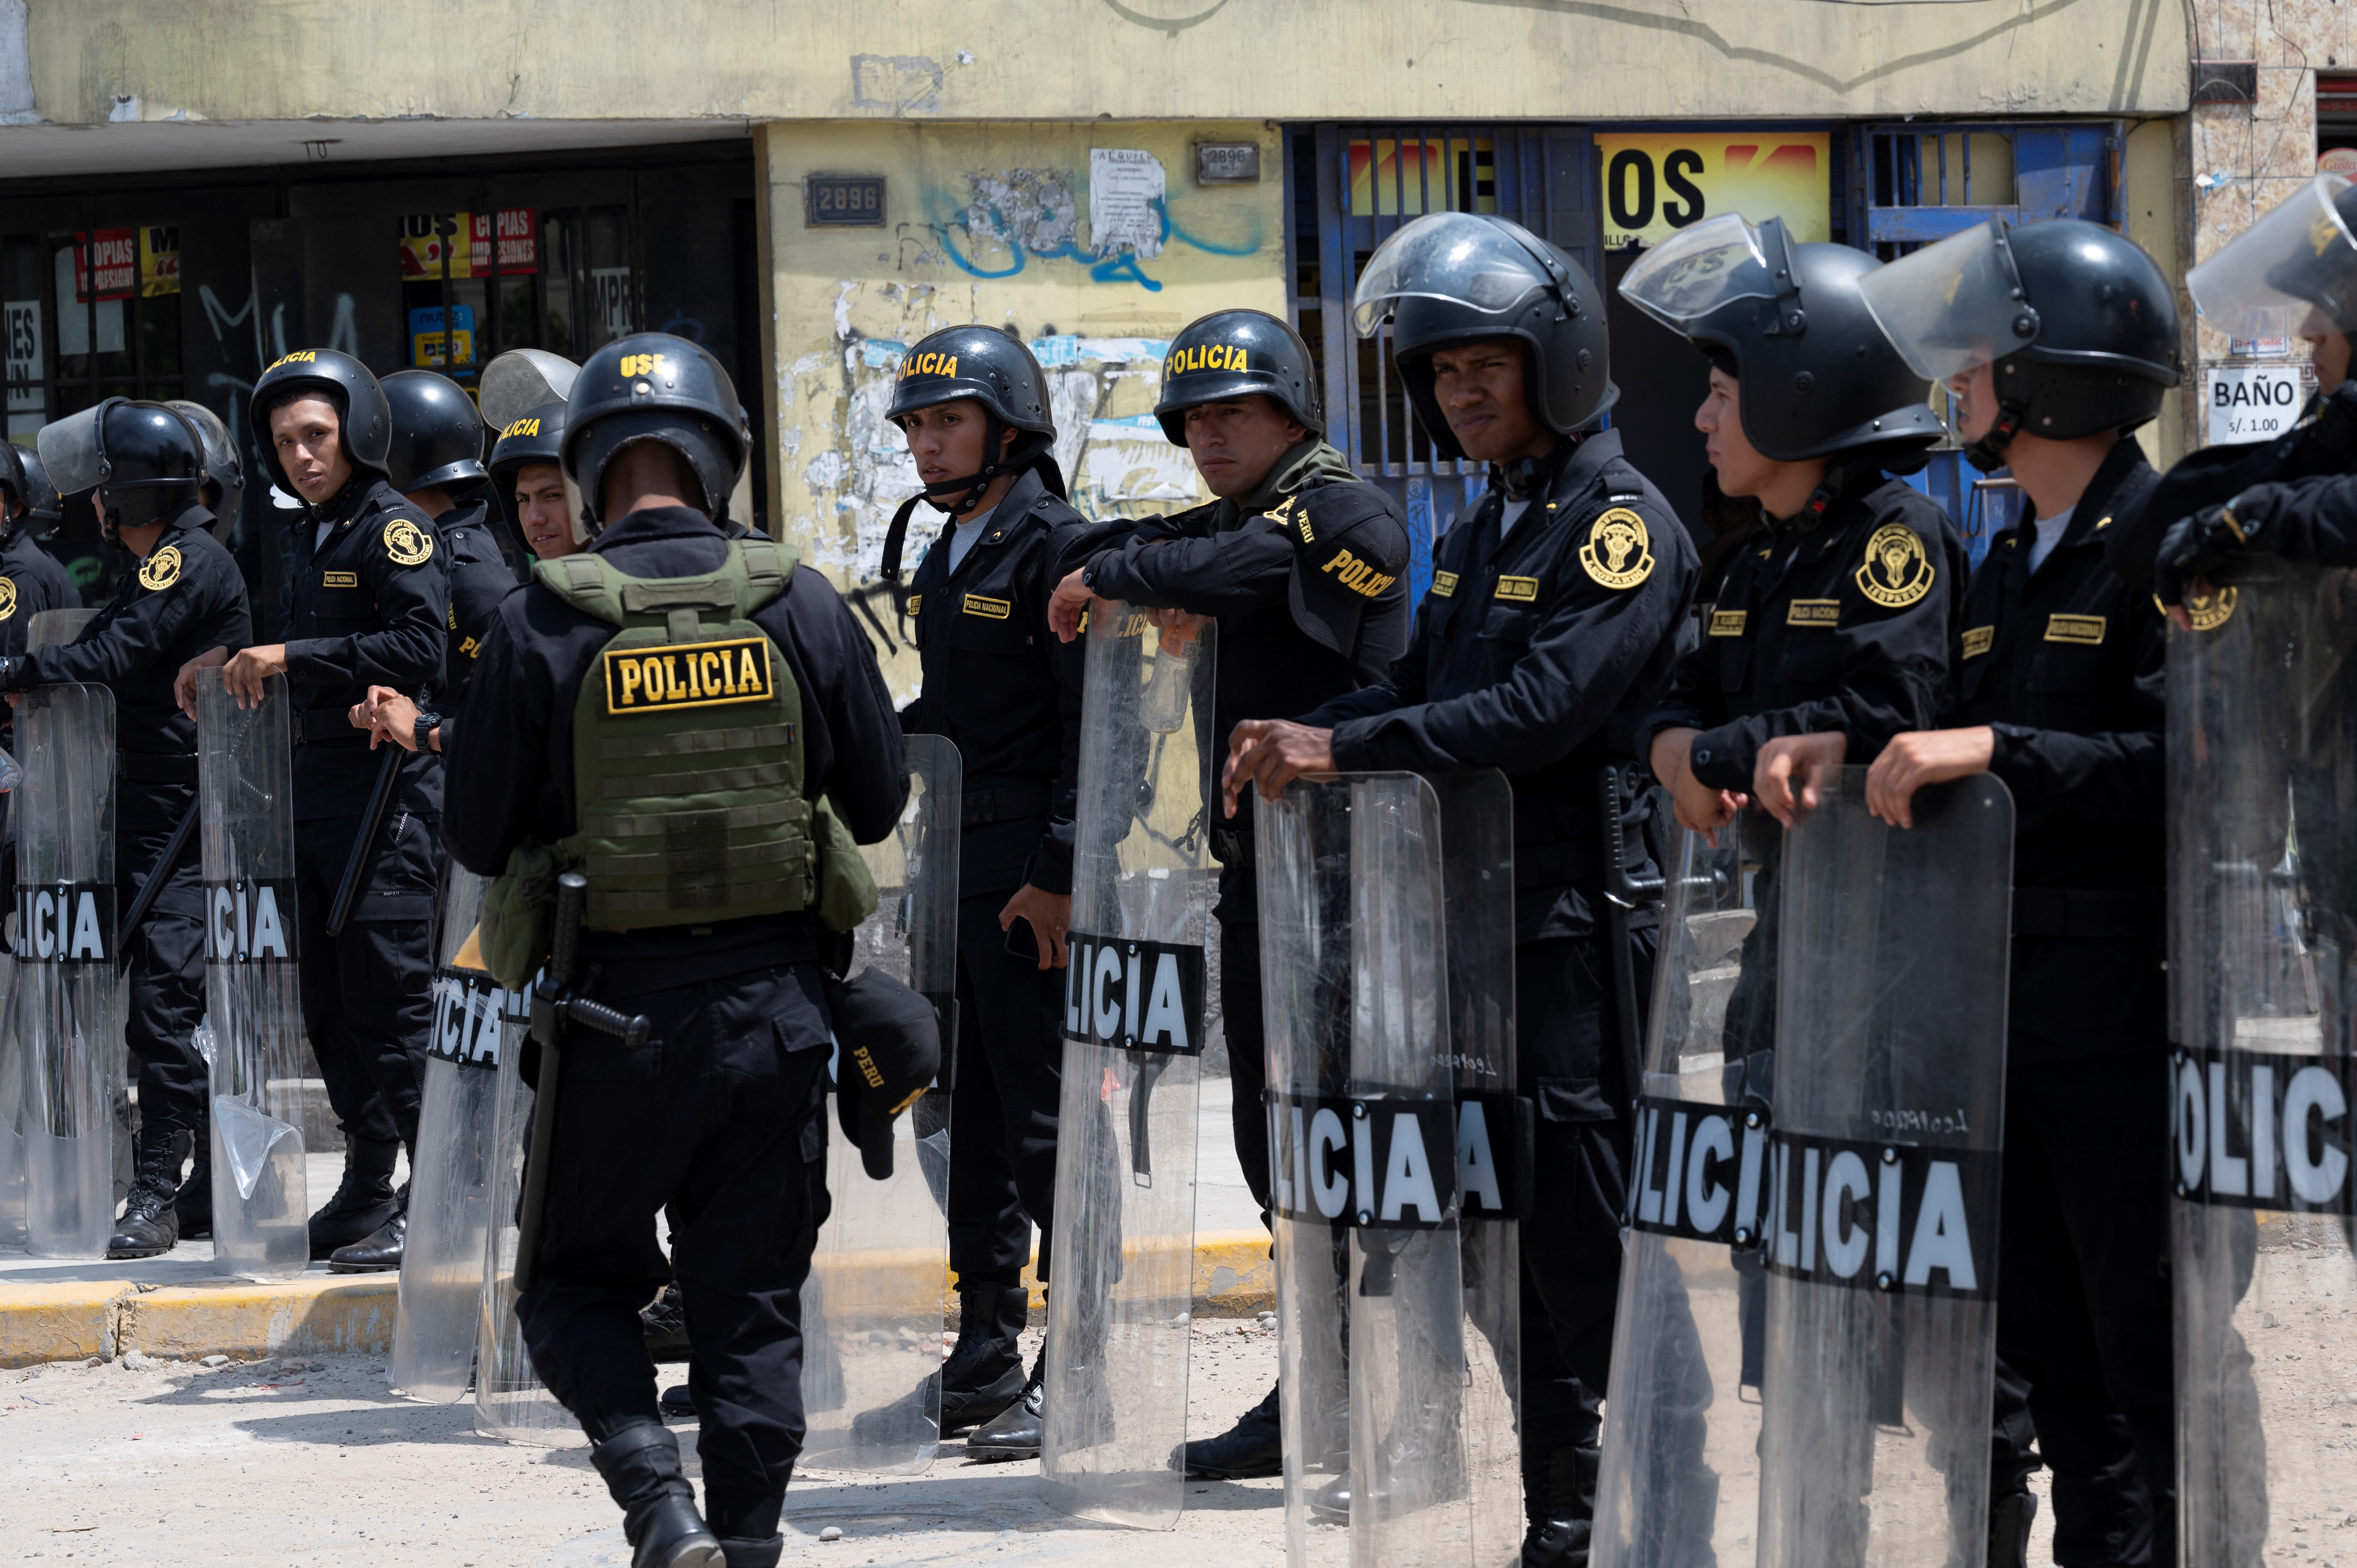 Organismos internacionales han pedido el cese de la violencia estatal contra ciudadanos peruanos. (Cris BOURONCLE / AFP)